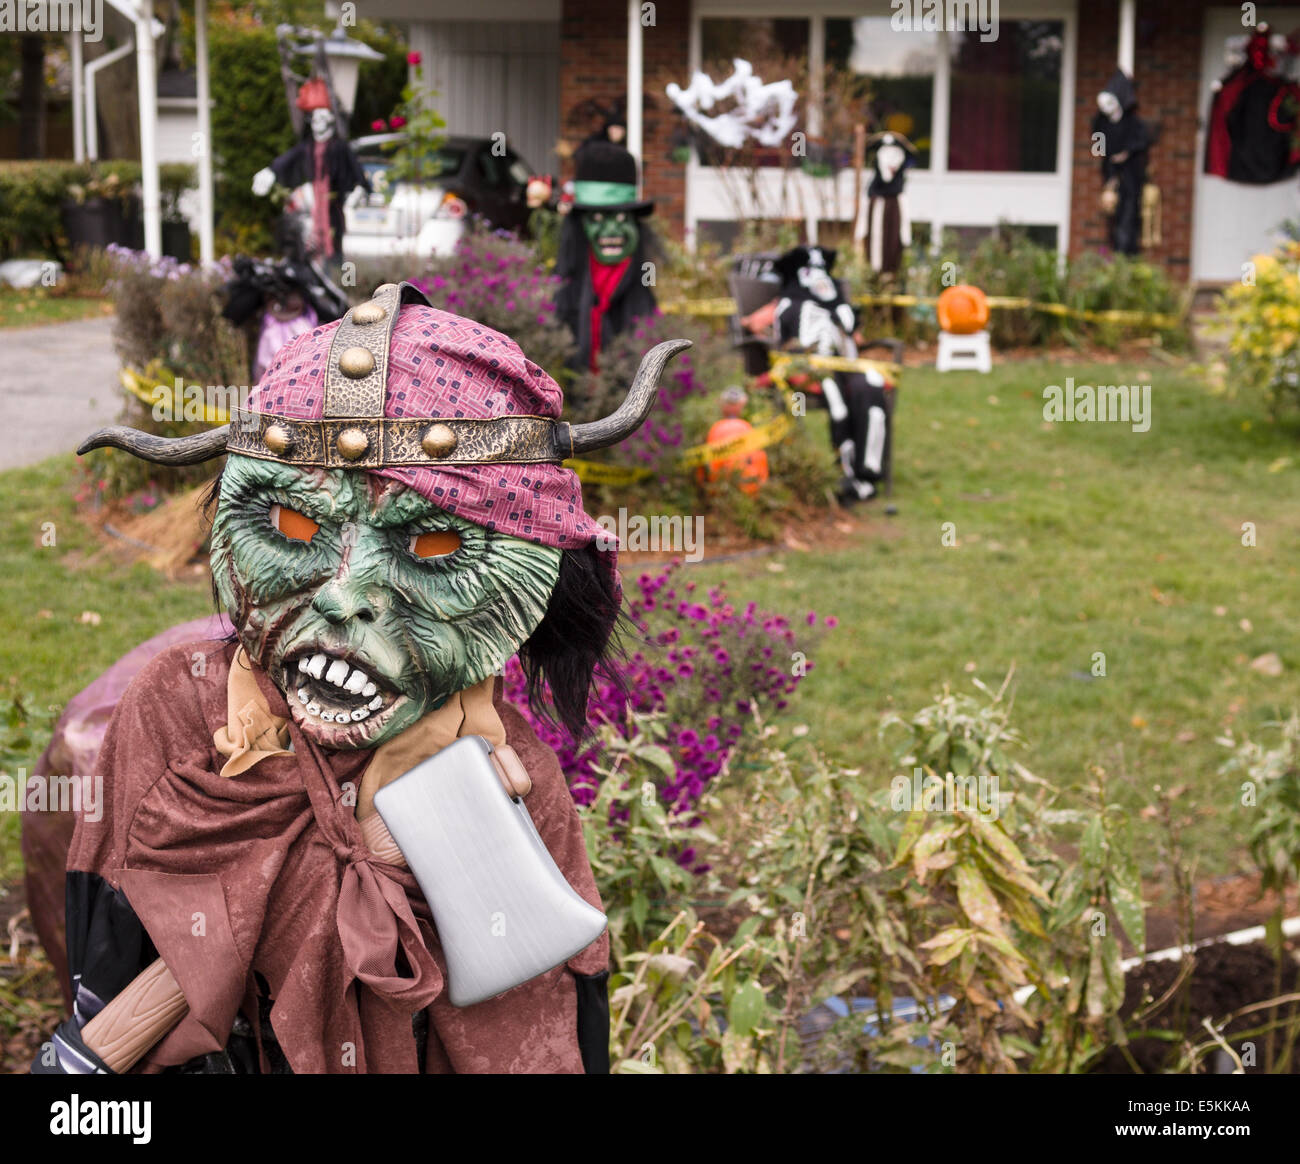 Vorgarten Halloween Display: Killer Viking. Maske, Wikinger Helm und  Kautschuk Achsen dominieren eine an der Vorderseite des angezeigte Zahl ein  Stockfotografie - Alamy